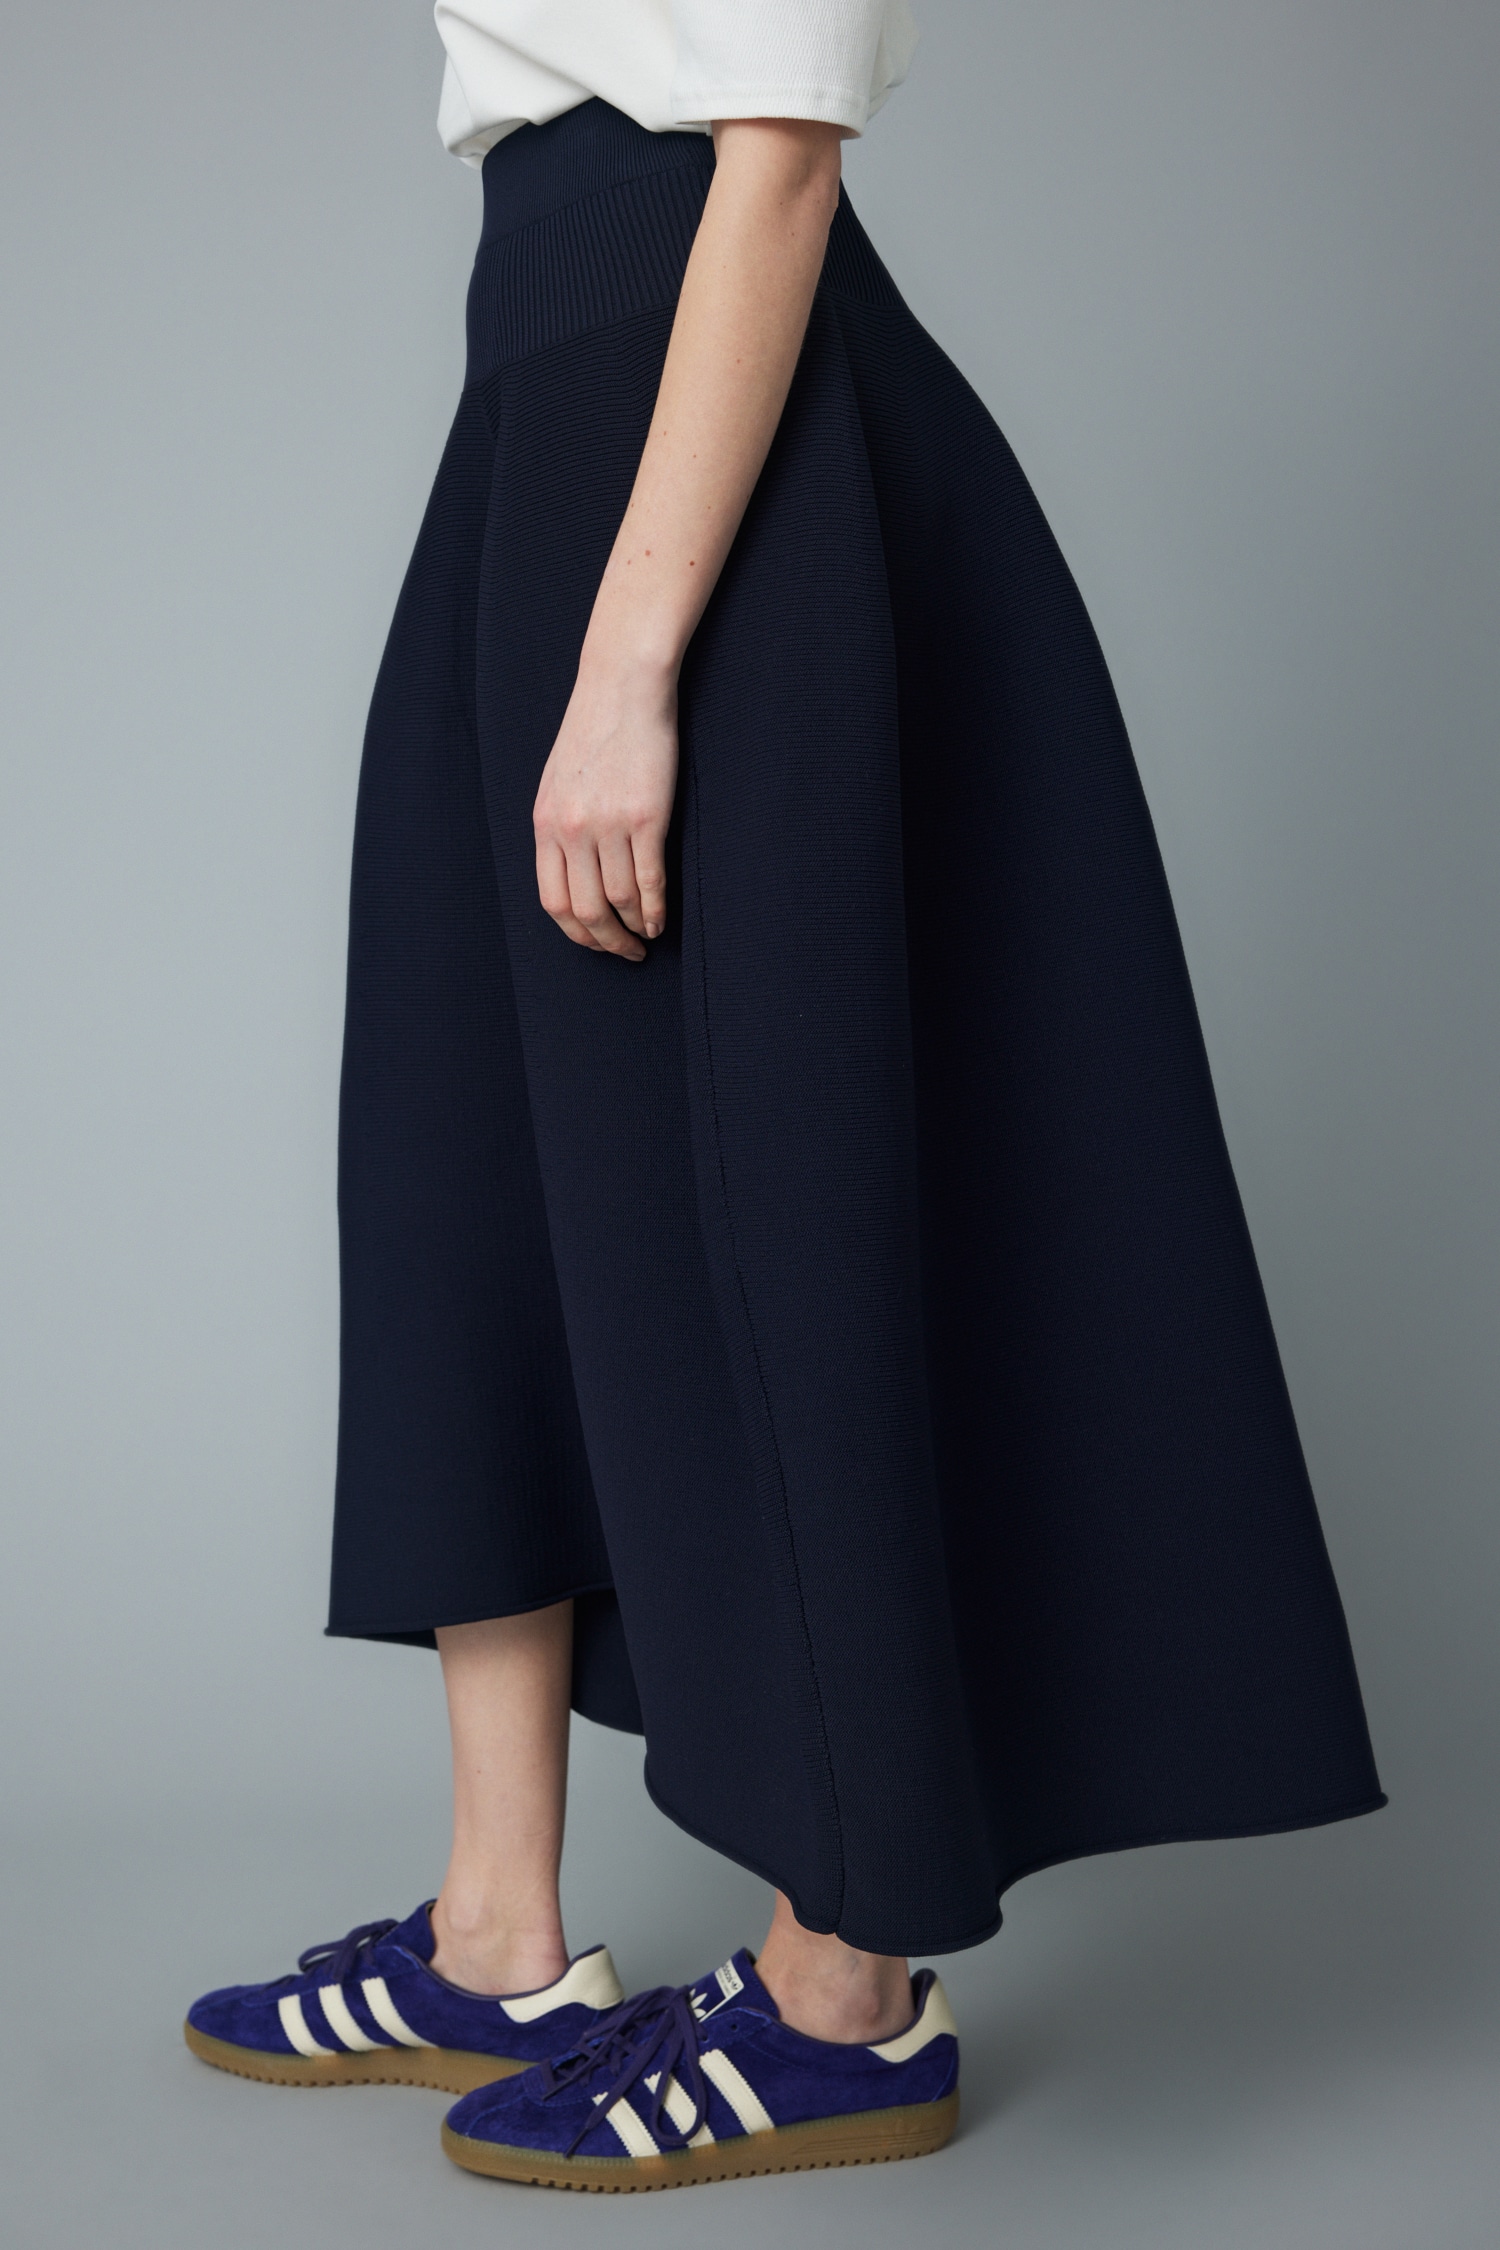 HeRIN.CYE | Jersey volum knit skirt (スカート(ロング) ) |SHEL'TTER ...